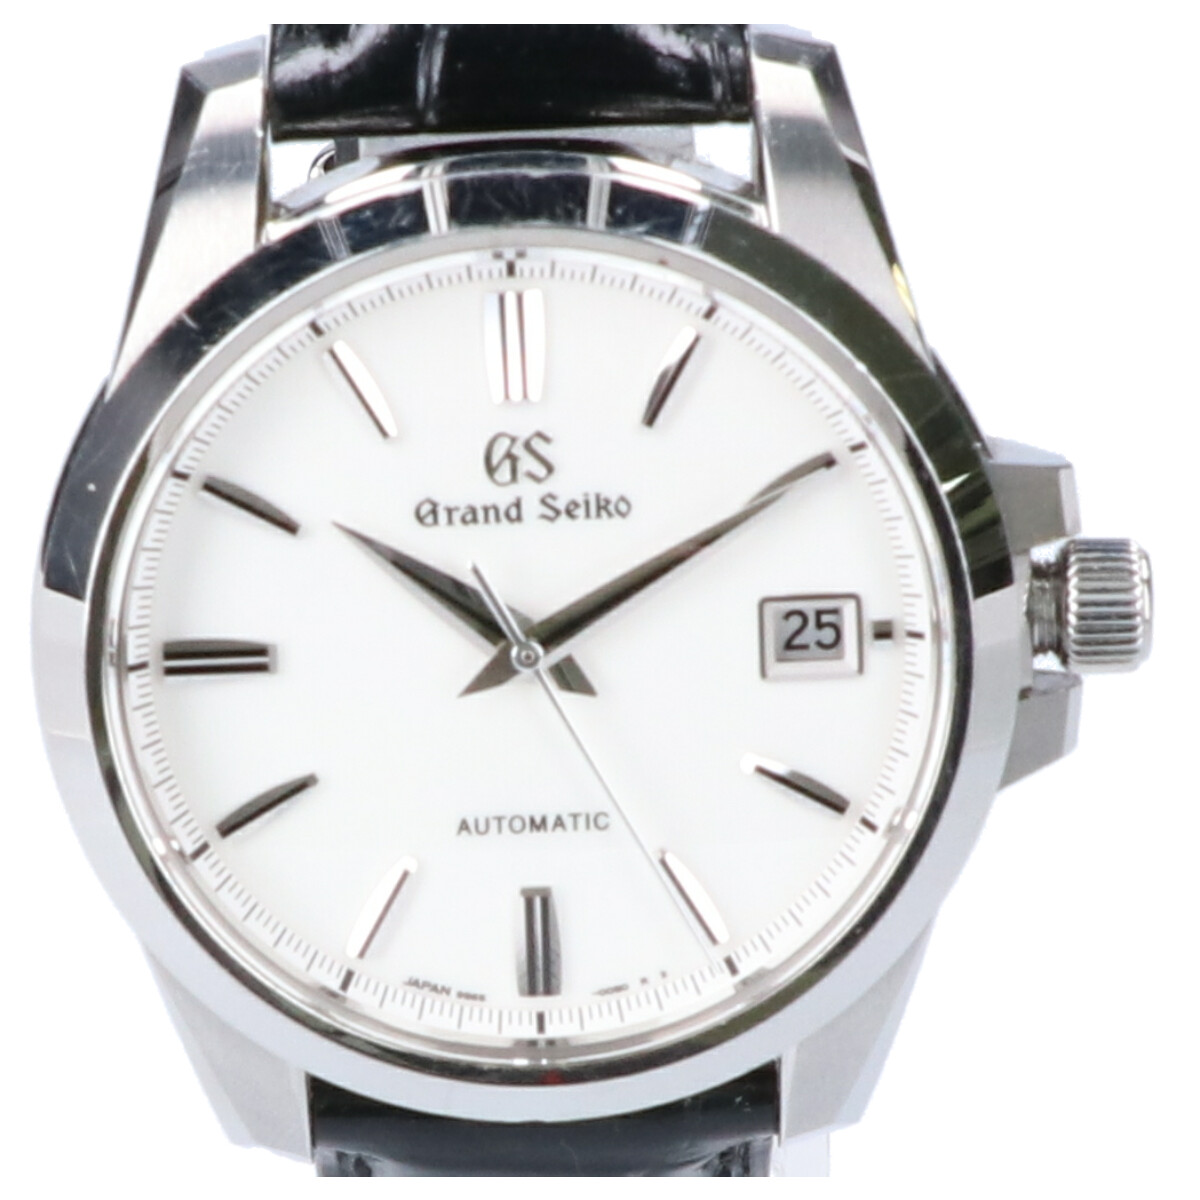 セイコーのSBGR255 9Sメカニカル シースルーバック 自動巻き 腕時計の買取実績です。